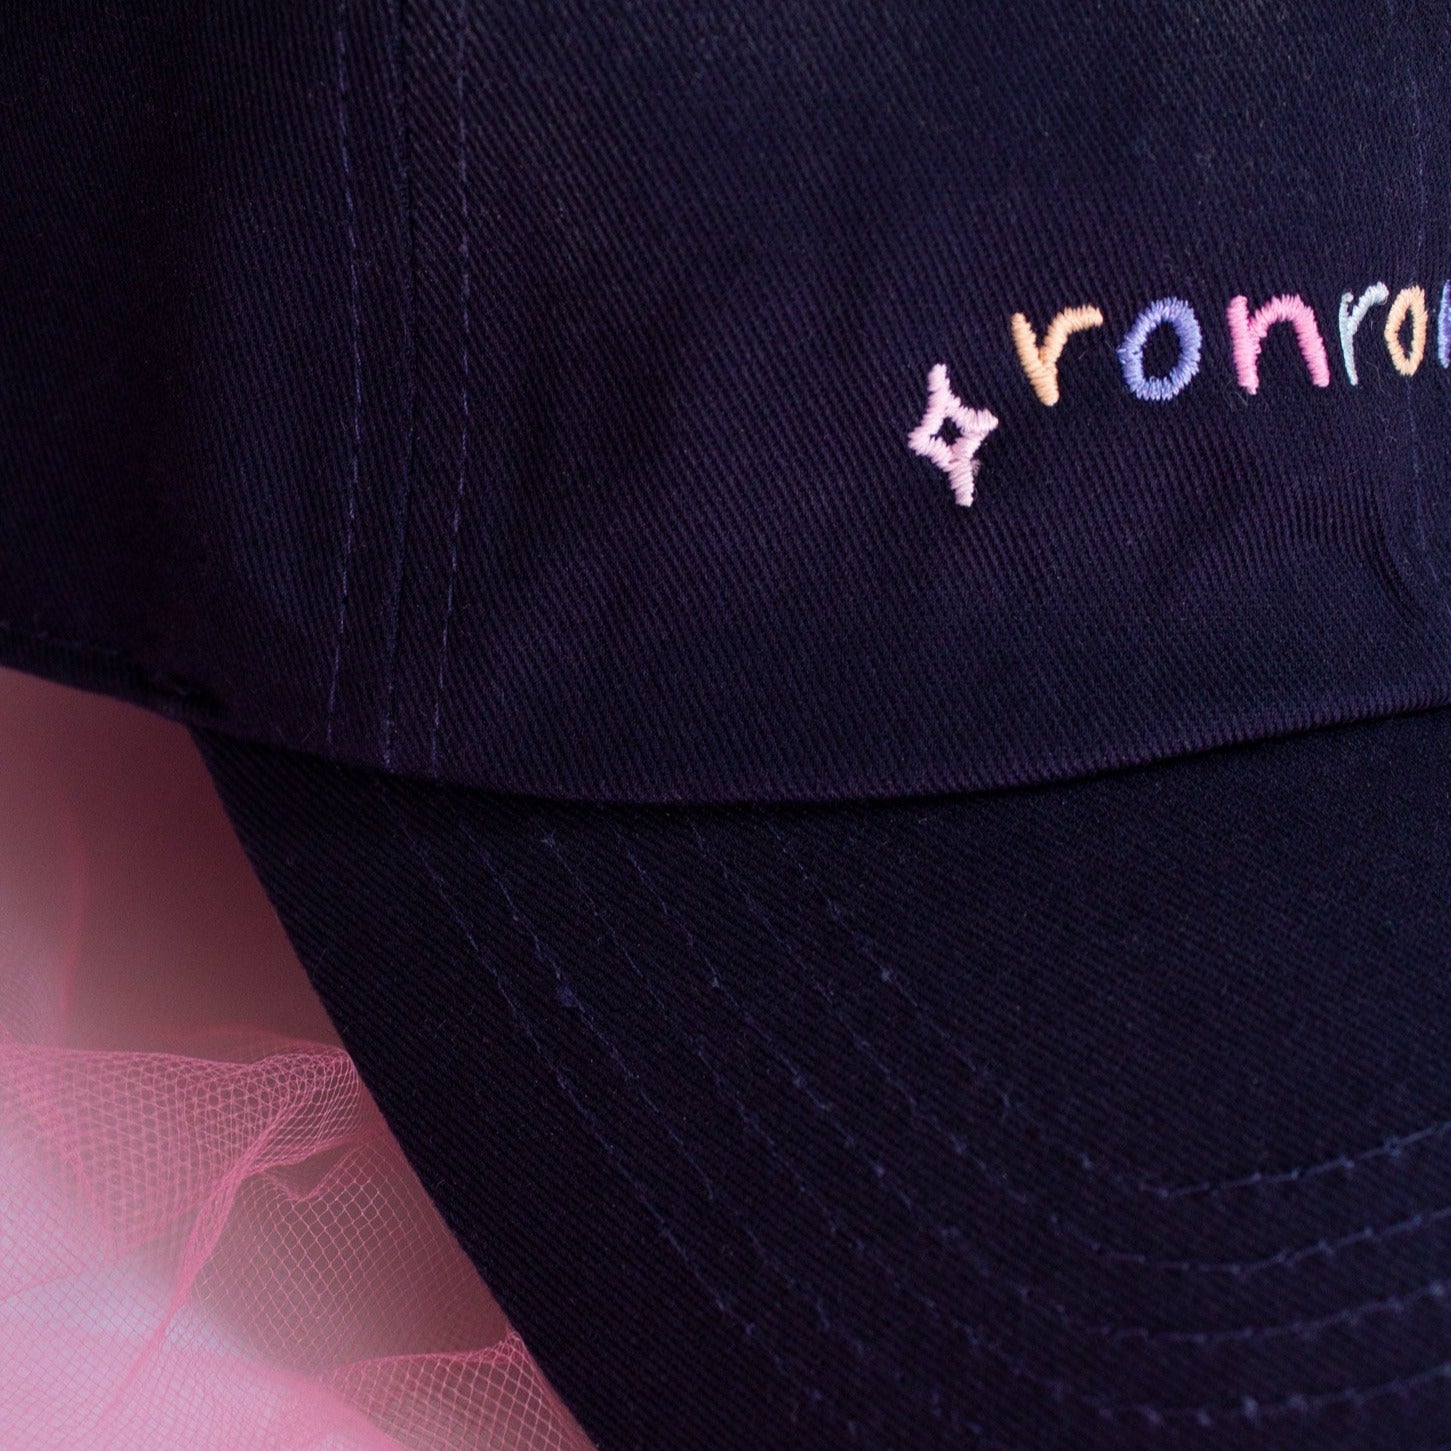 Ronron.club Dad Hat